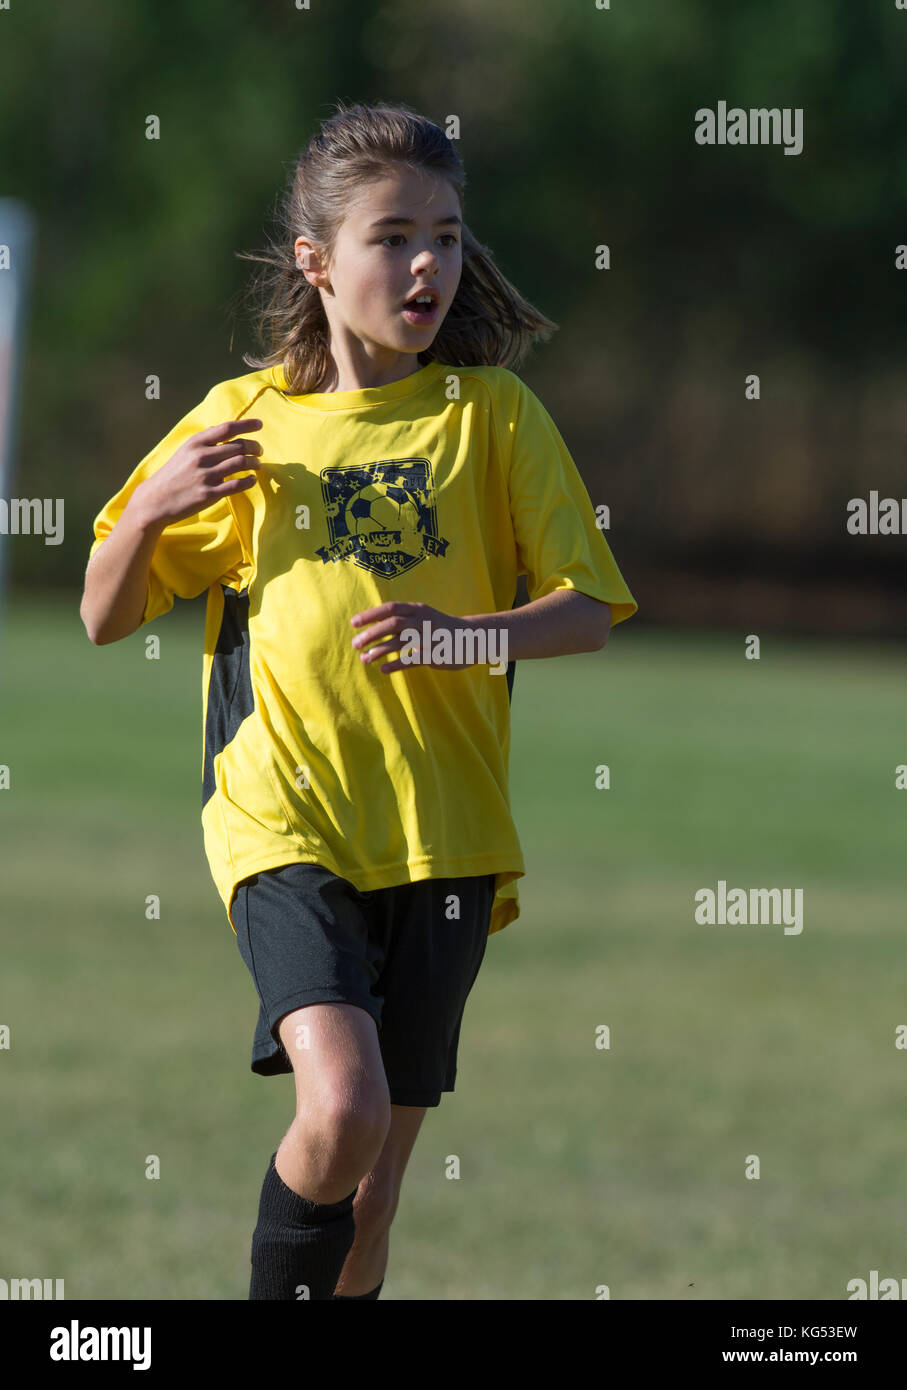 A 9ans fille jouant dans un match de football. moretown, Vermont, Etats-Unis Banque D'Images